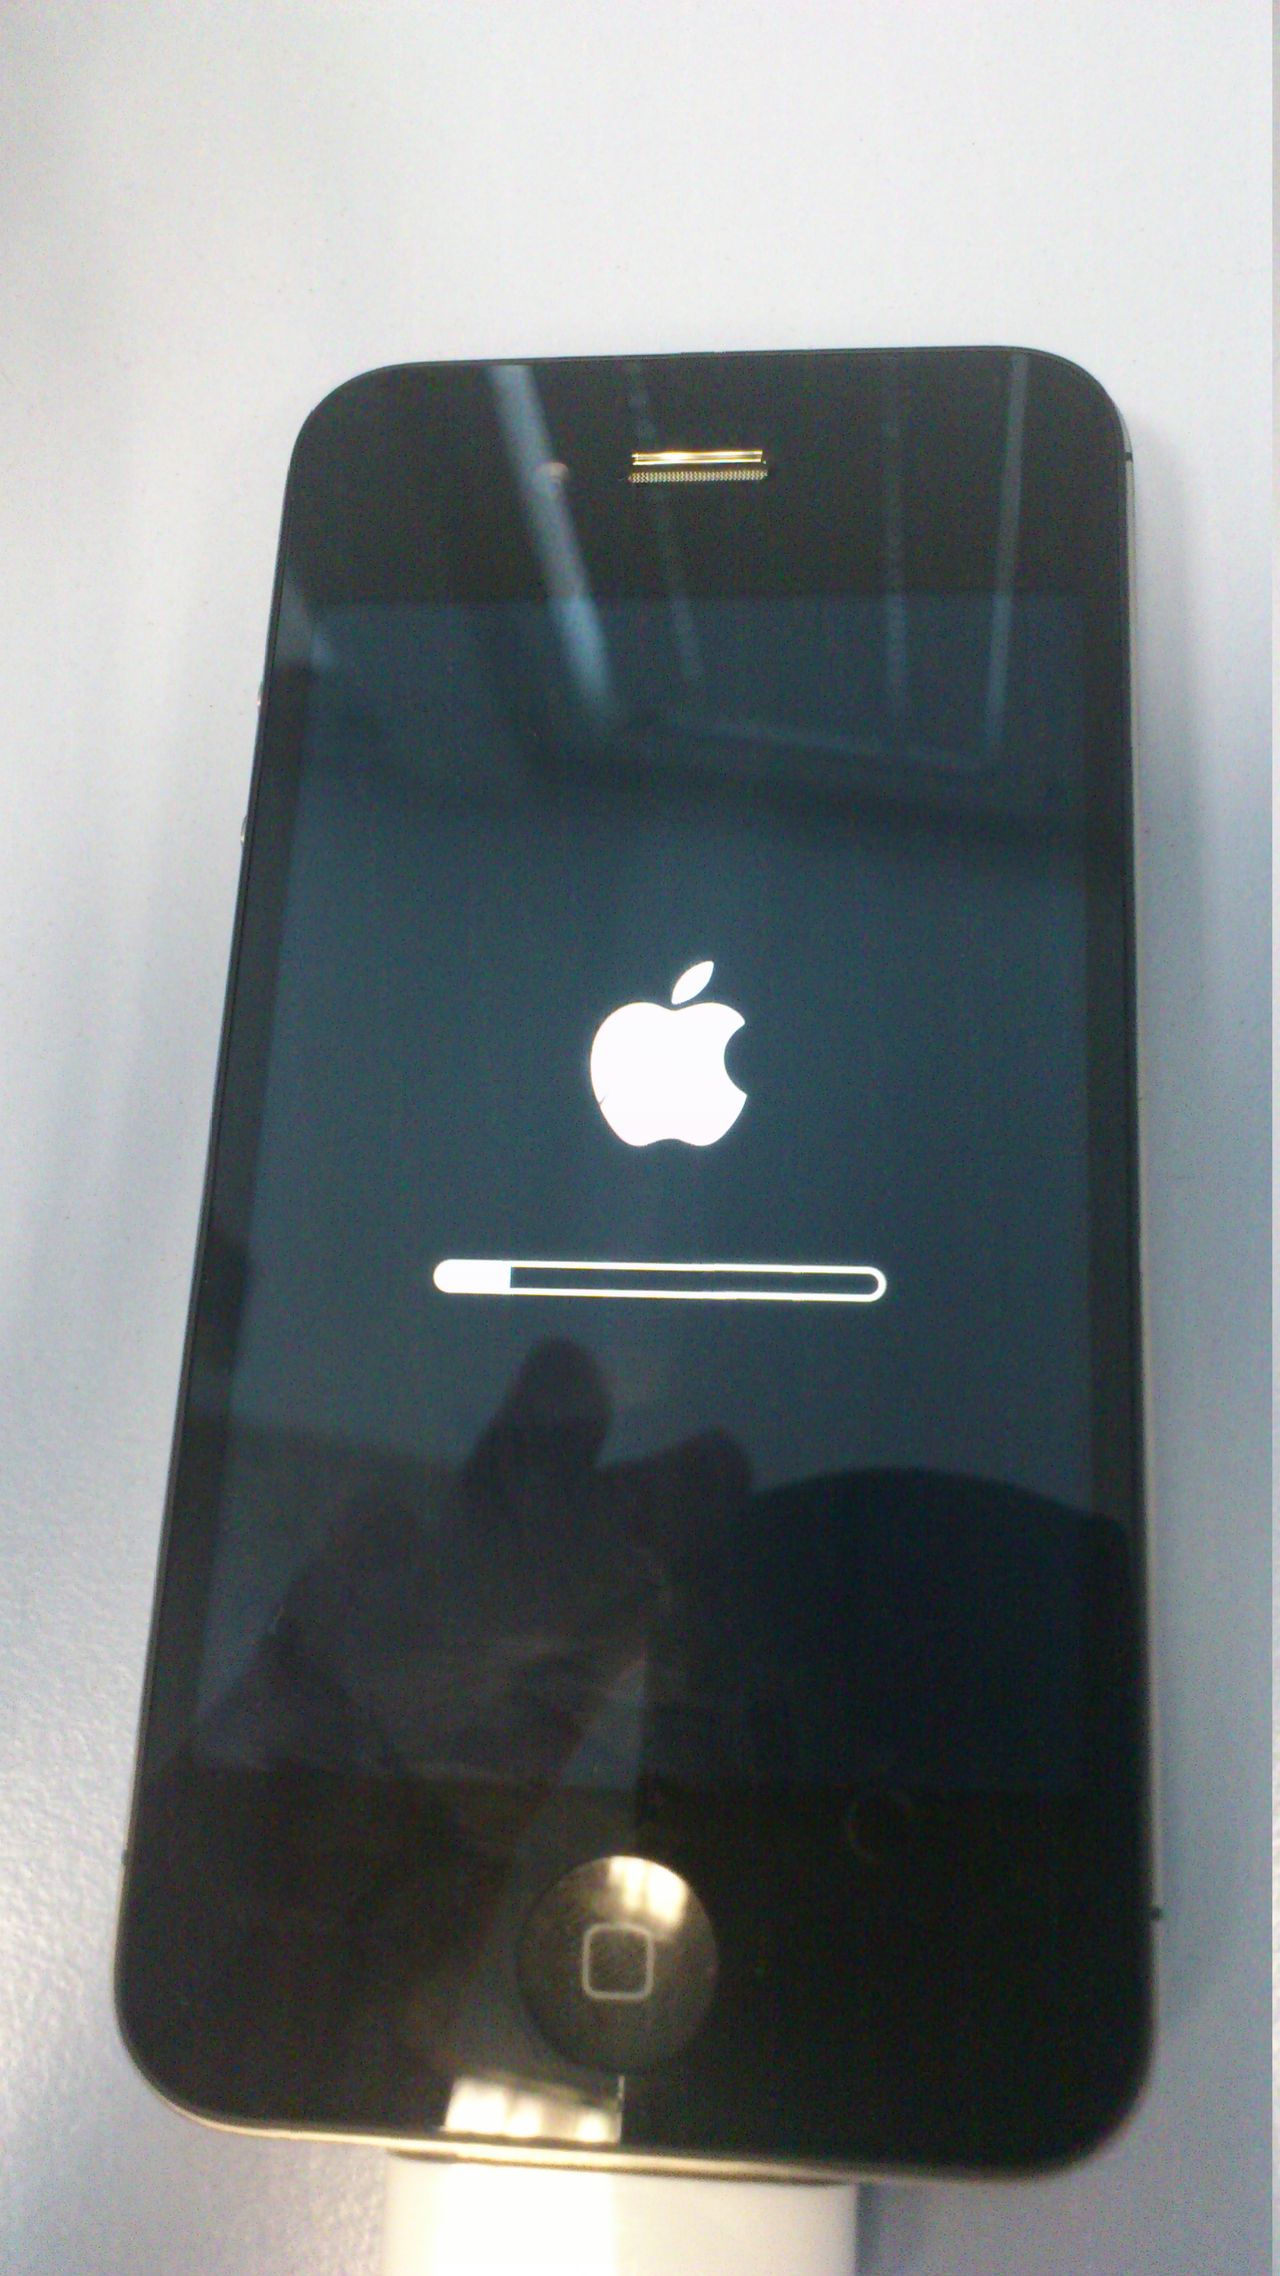 iOS6 na iPhone 4S - szybkie spostrzeżenia użytkownika z doskoku